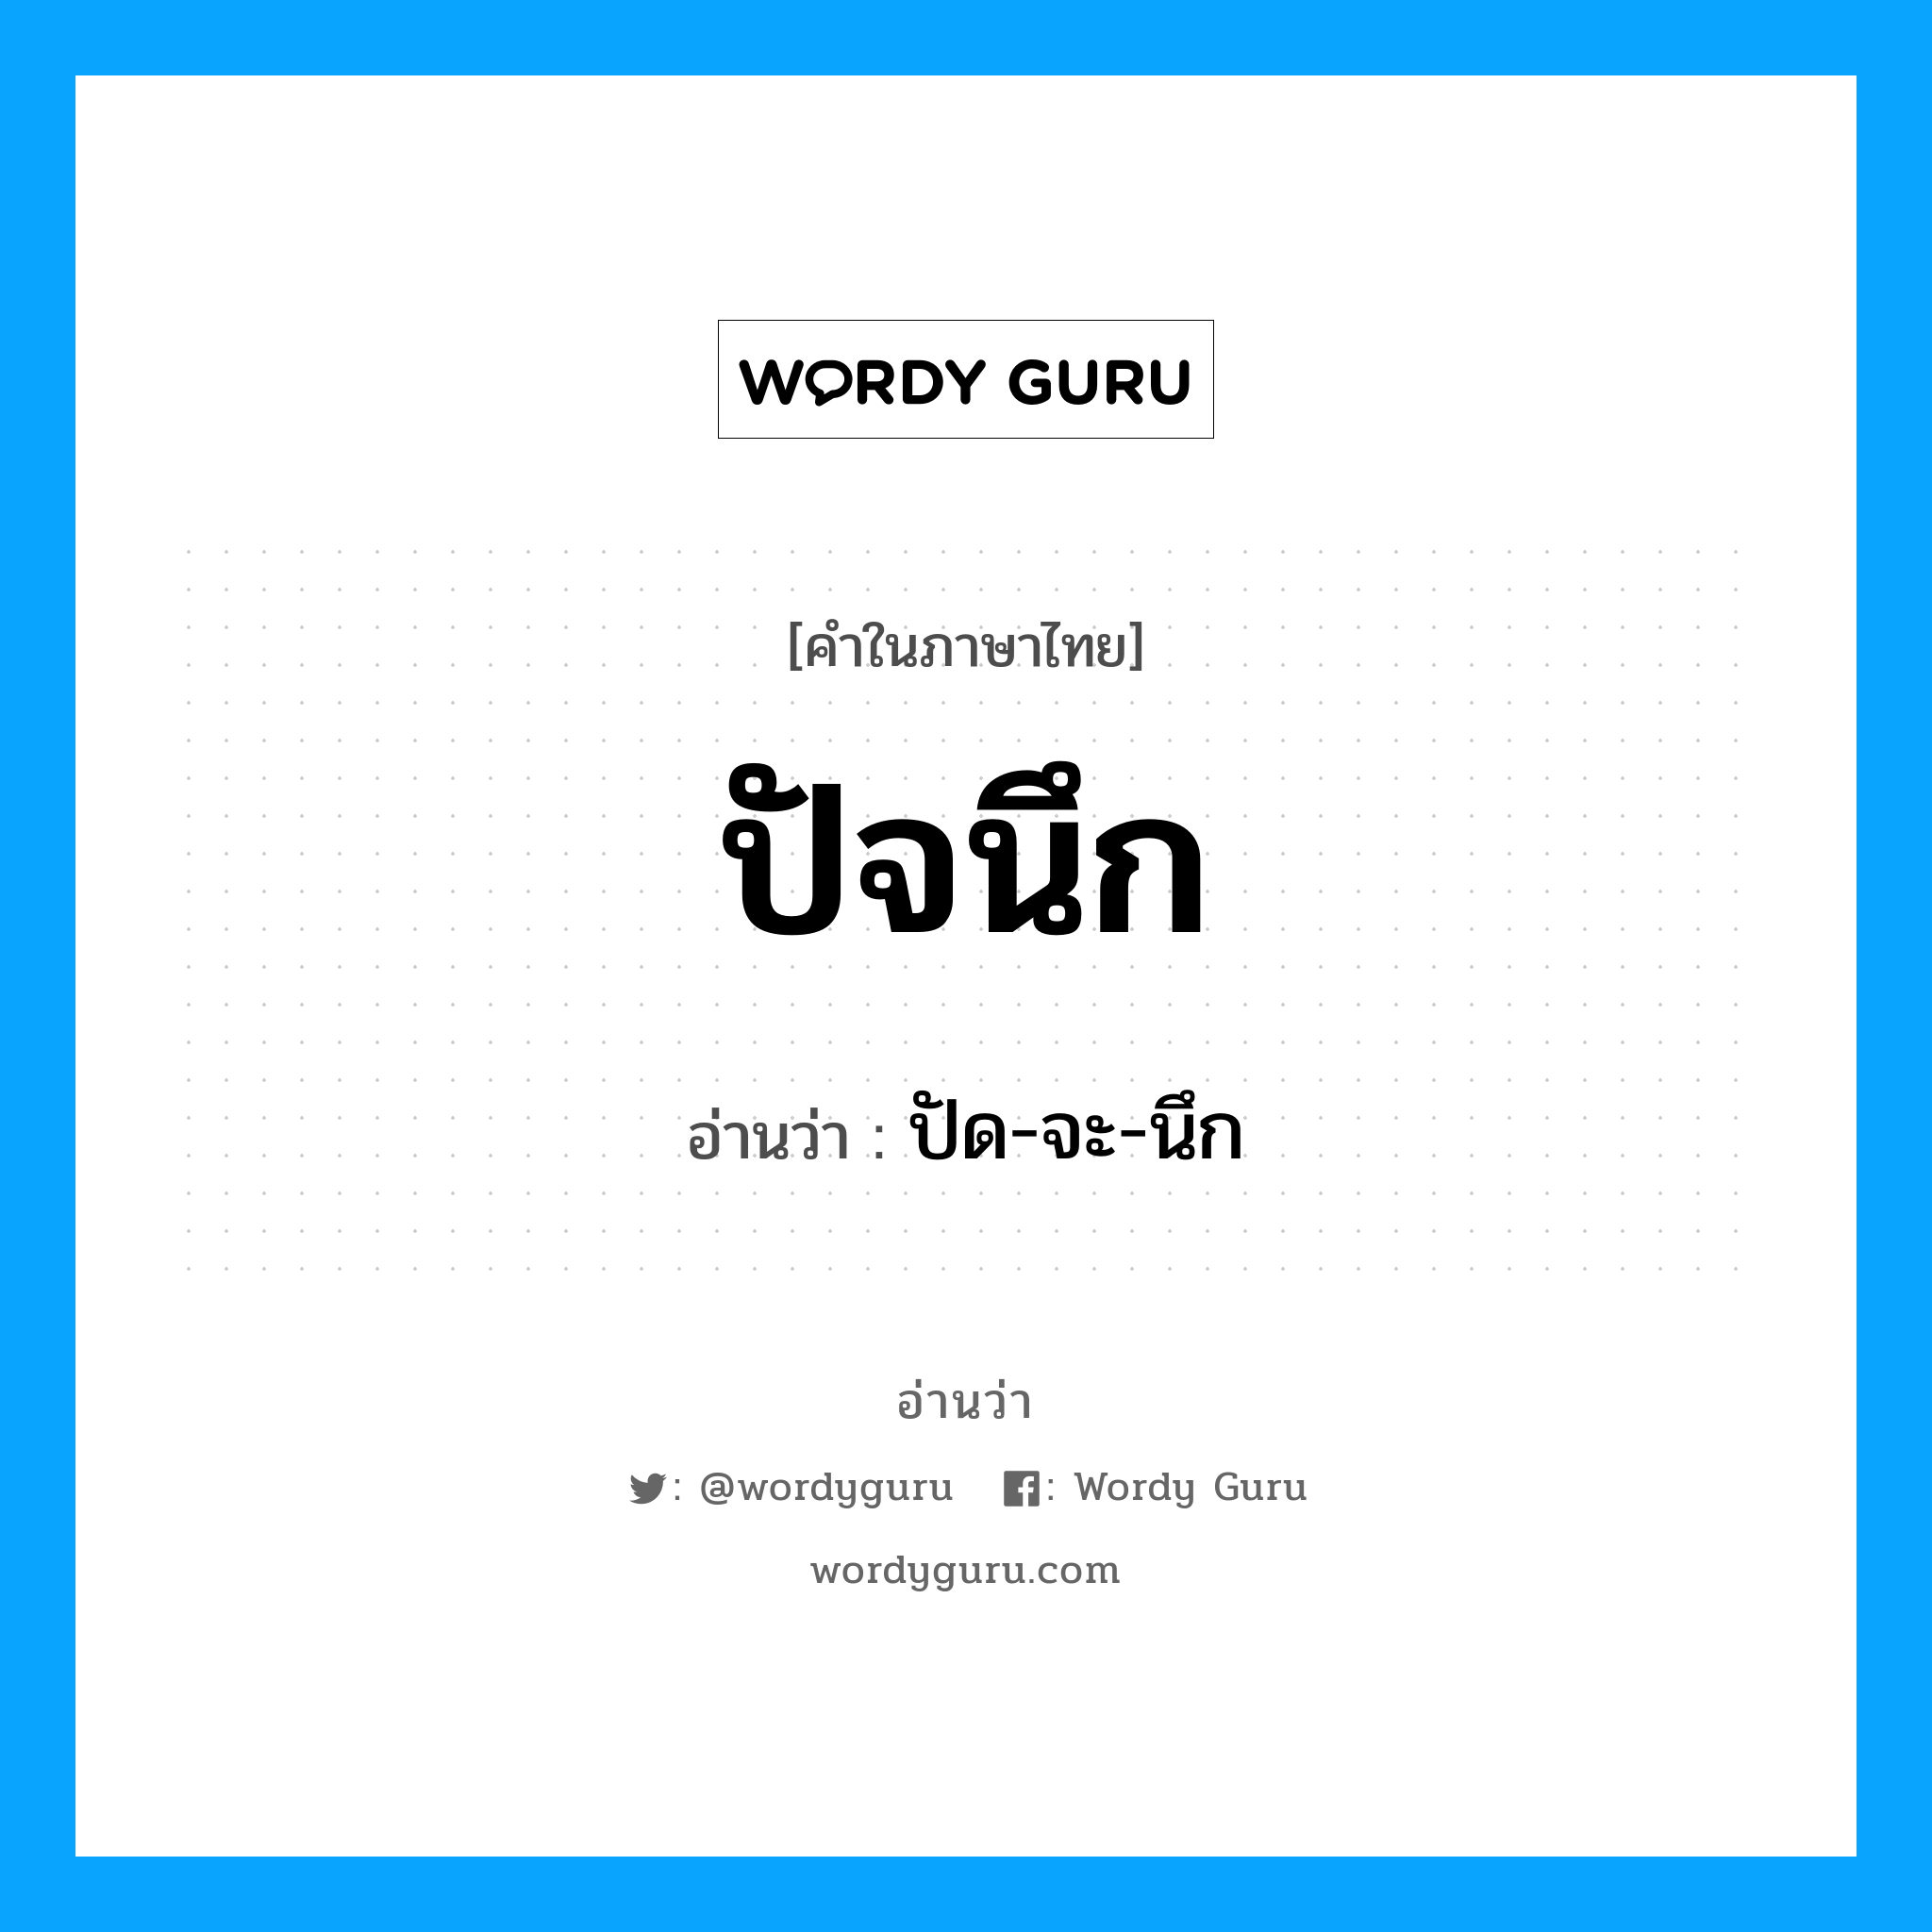 ปัด-จะ-นึก เป็นคำอ่านของคำไหน?, คำในภาษาไทย ปัด-จะ-นึก อ่านว่า ปัจนึก